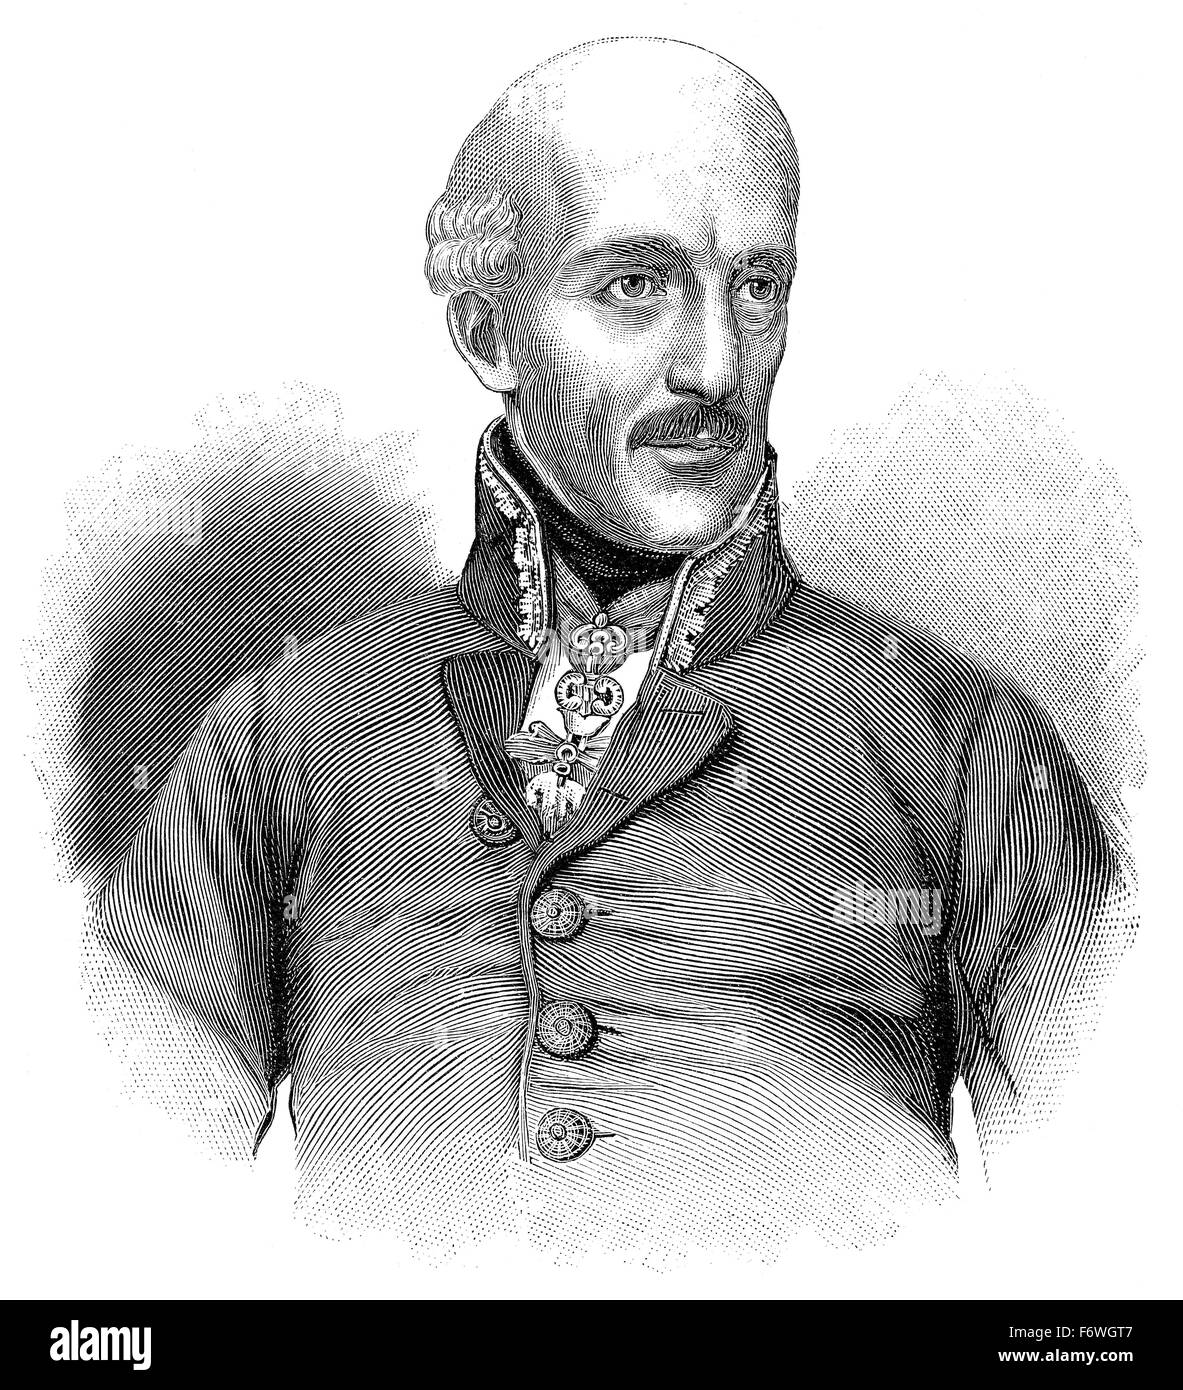 L'Archiduc Jean d'Autriche, 1782 - 1859, un maréchal autrichien et allemand, régent impériale des Habsbourg, Erzherzog Johann Banque D'Images